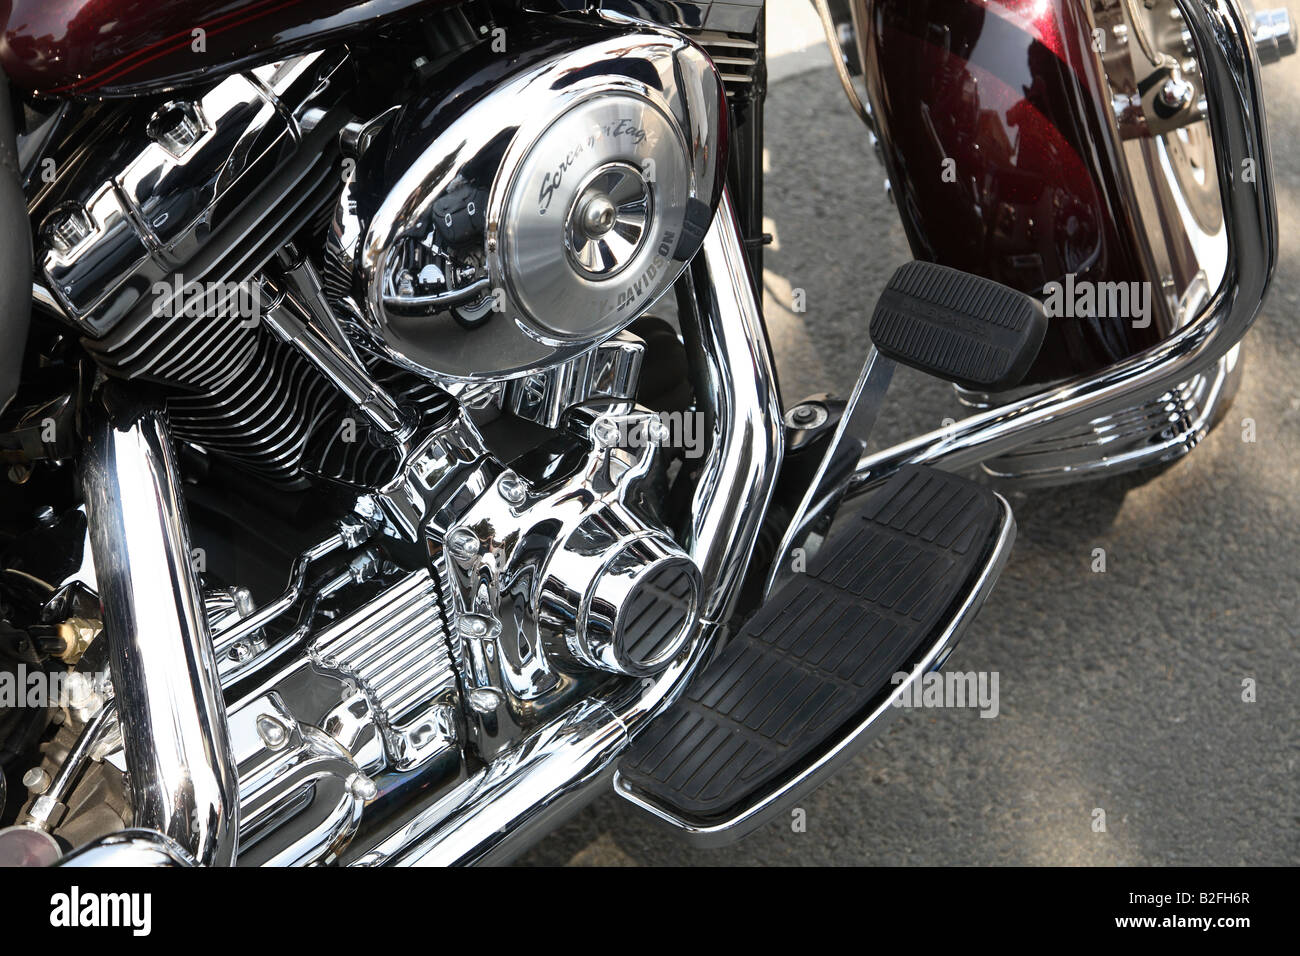 Harley Davidson Motor Stockfoto